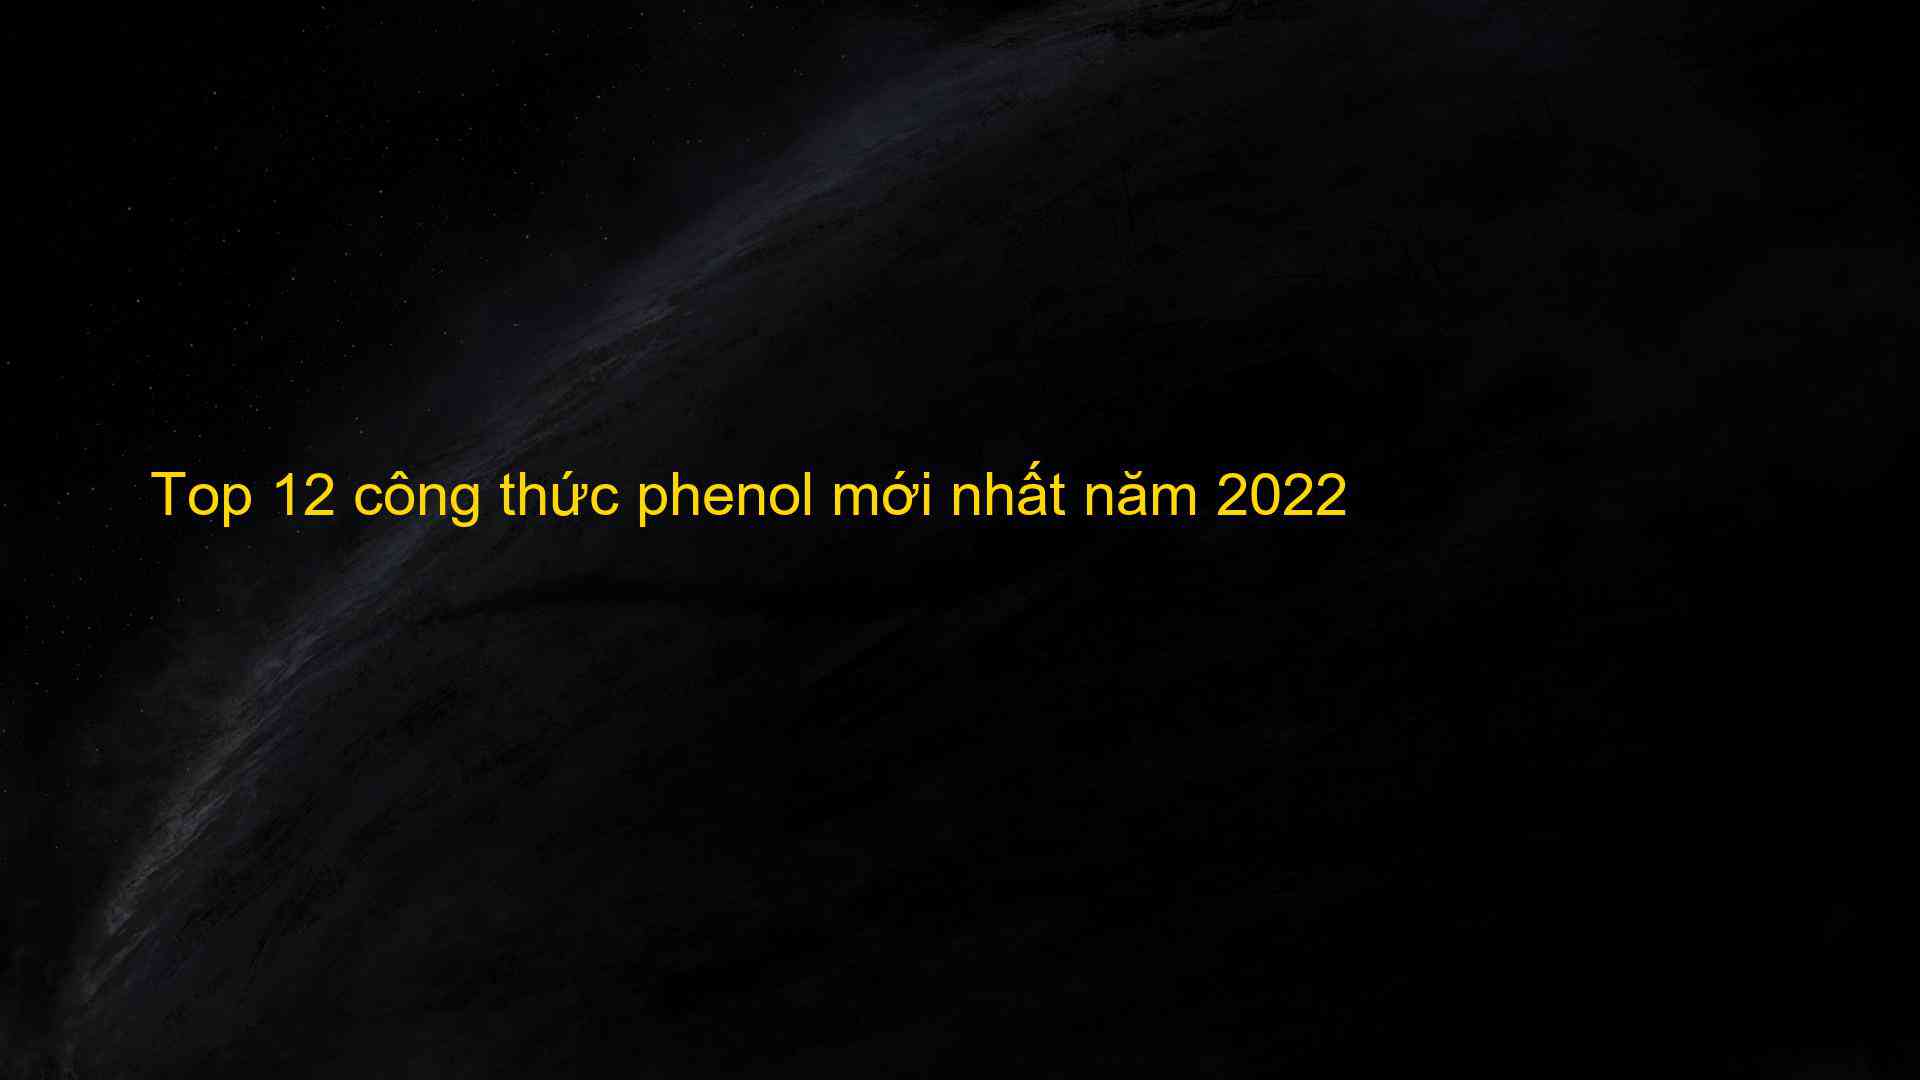 Top 12 cong thuc phenol moi nhat nam 2022 1659874767